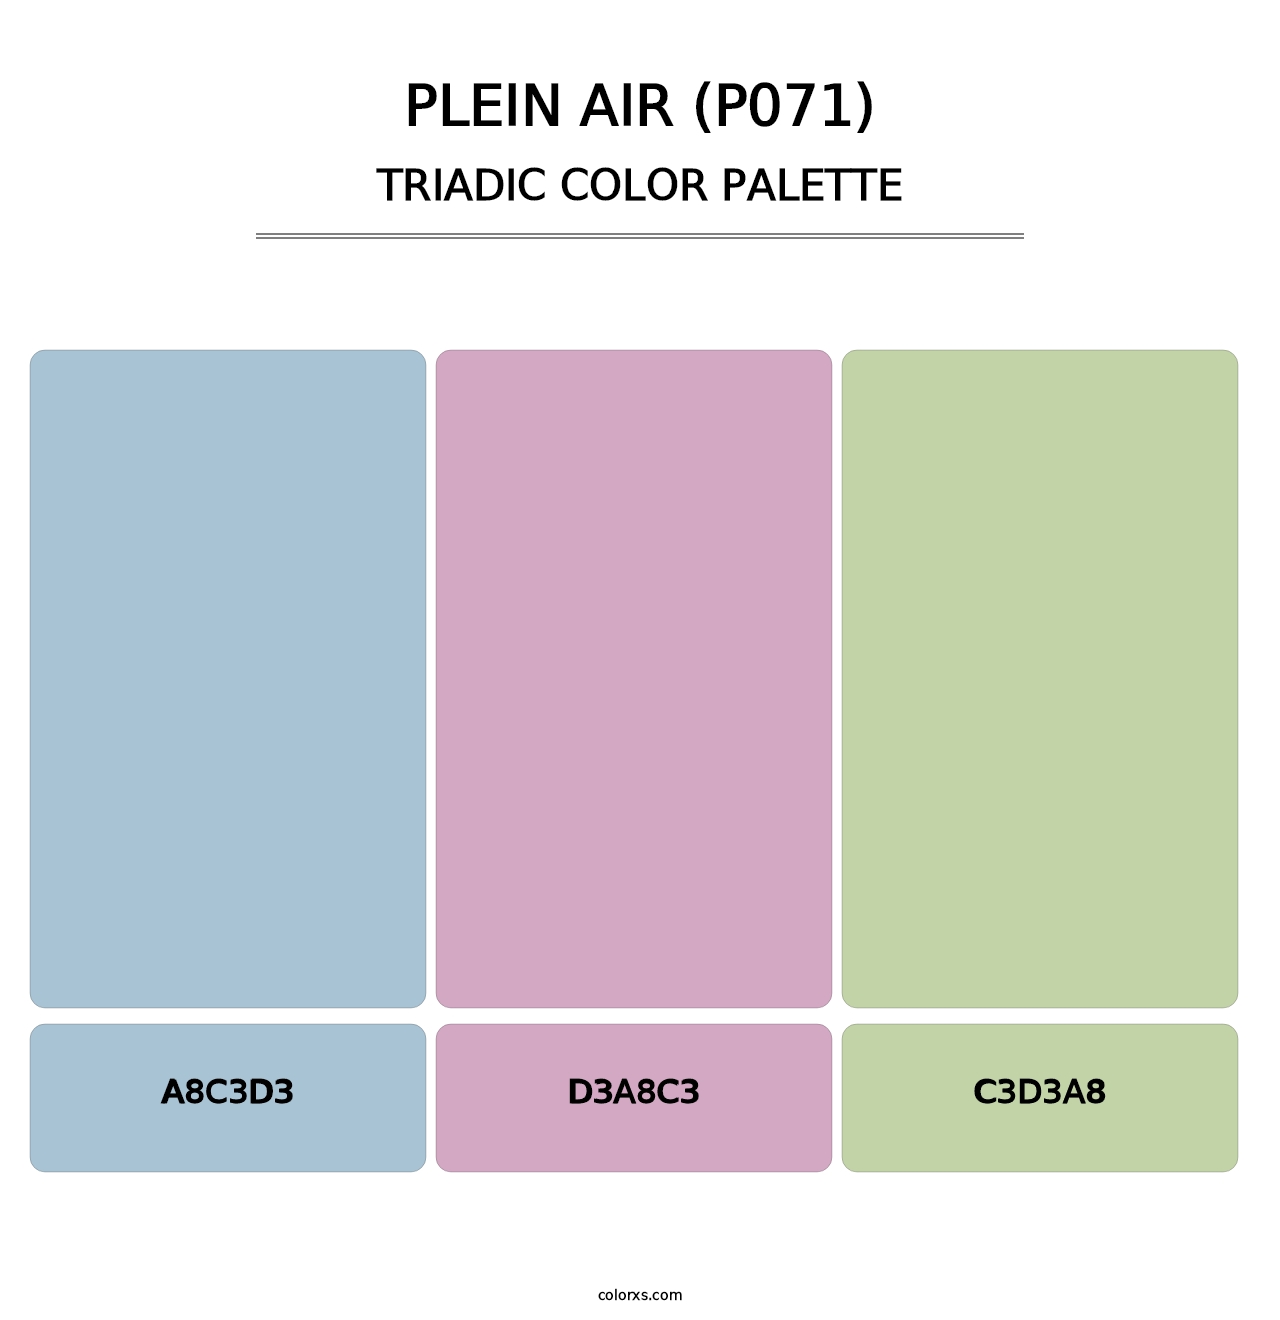 Plein Air (P071) - Triadic Color Palette